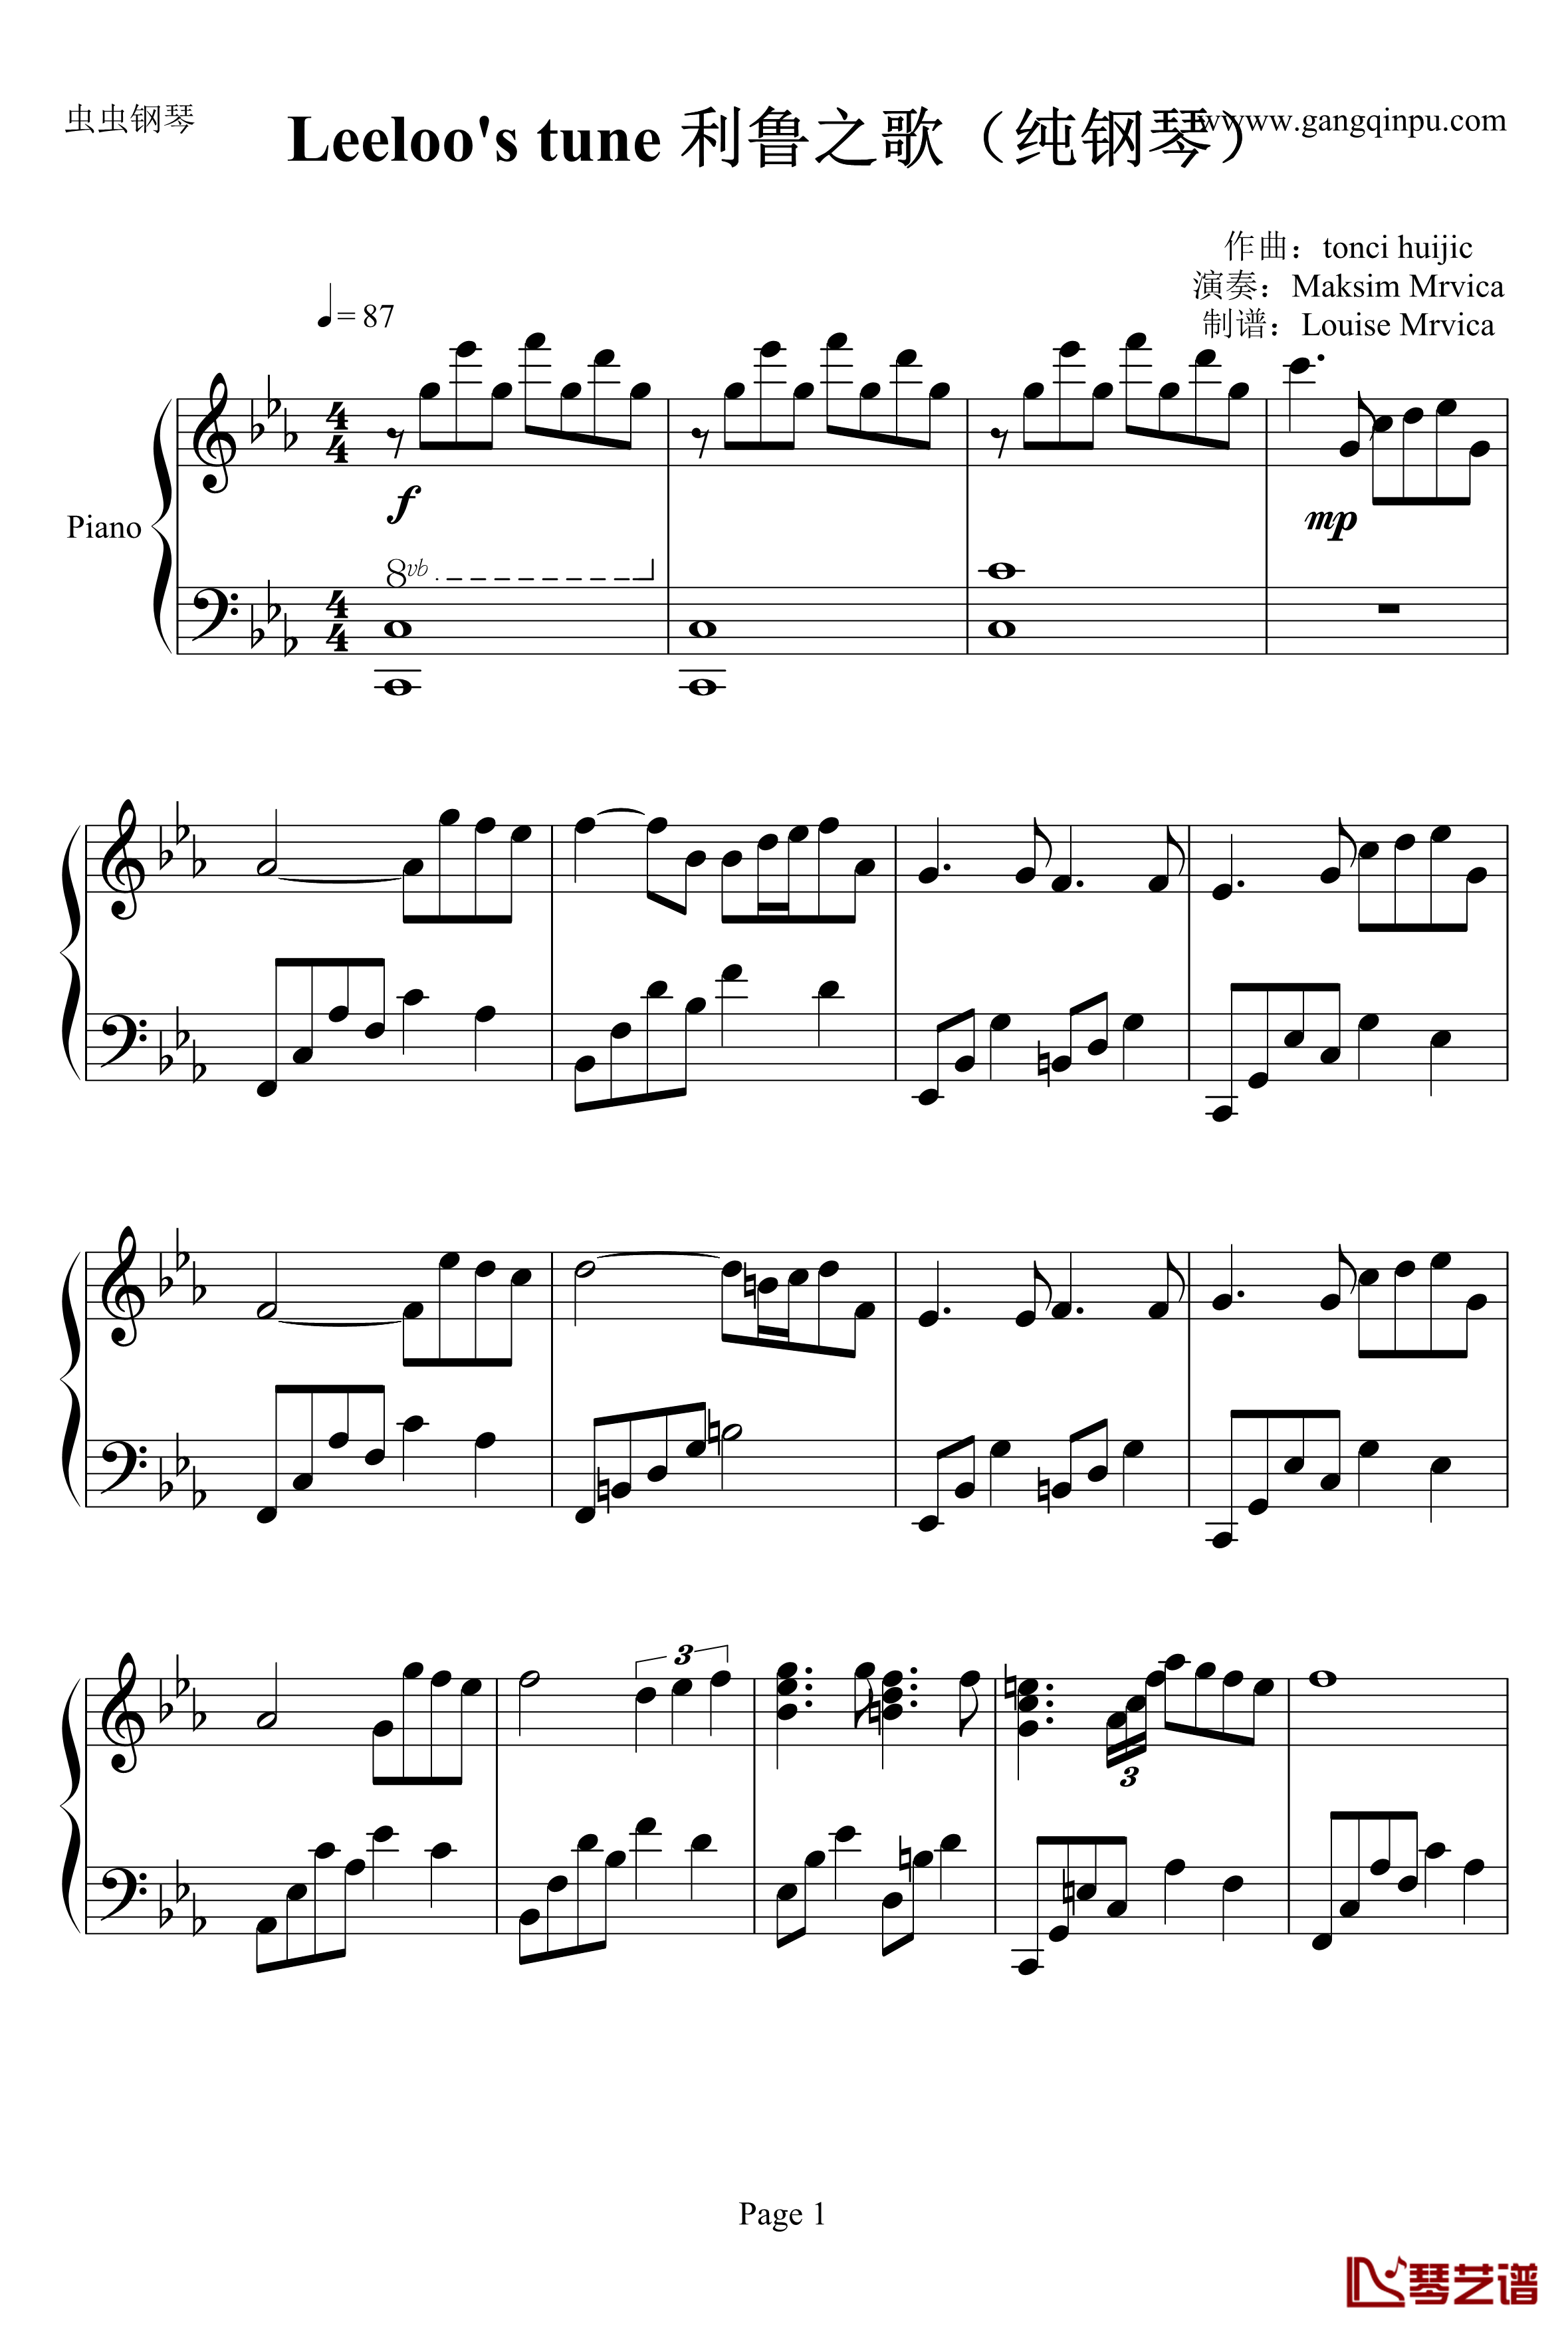 利鲁之歌钢琴谱-Leeloos tune-纯钢琴-马克西姆-Maksim·Mrvica1